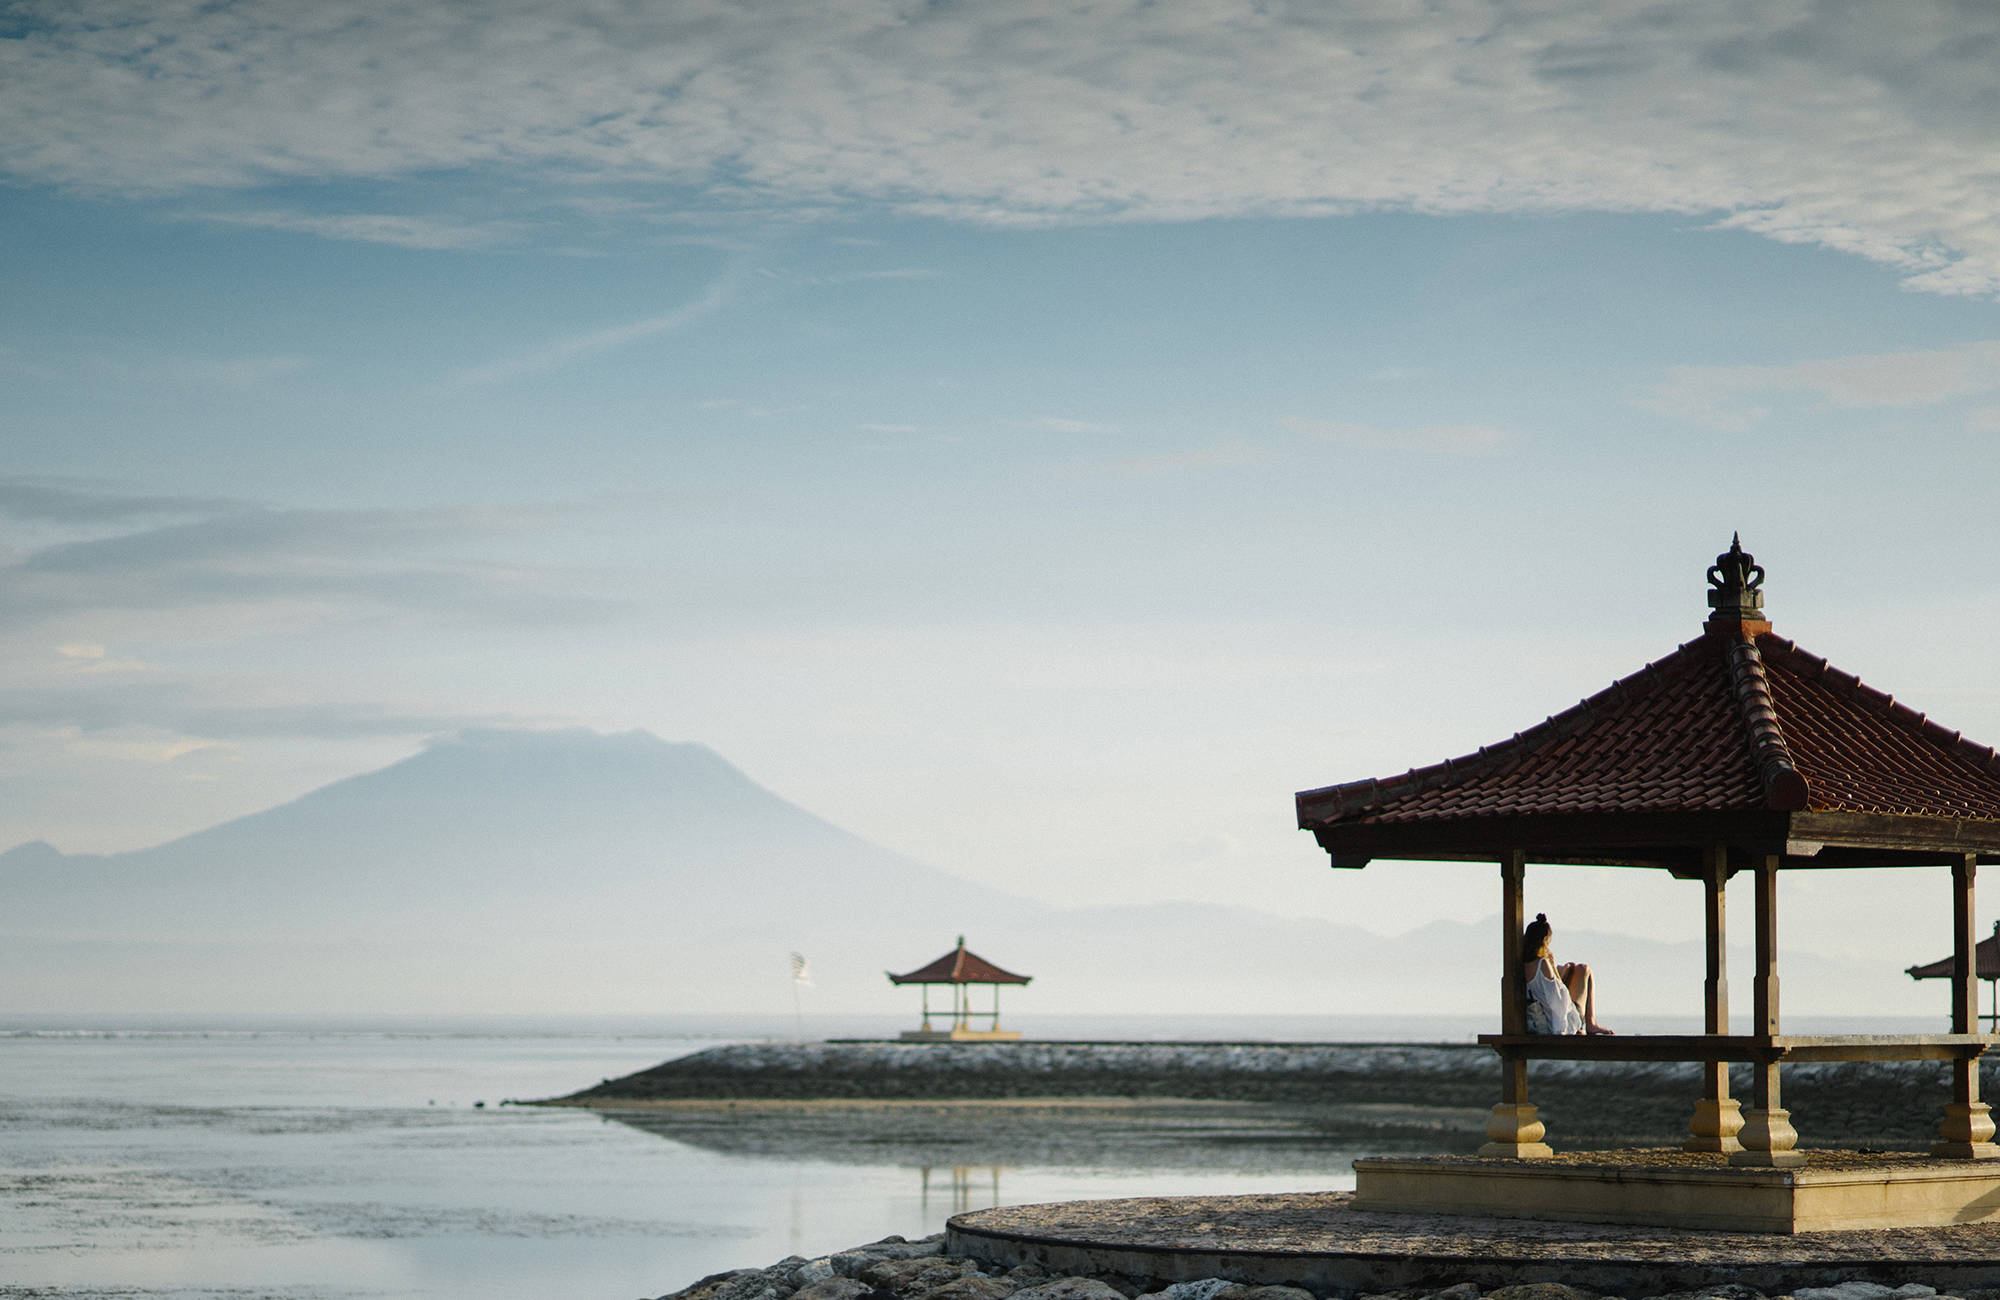 Seesteistä maisemaa Balilla